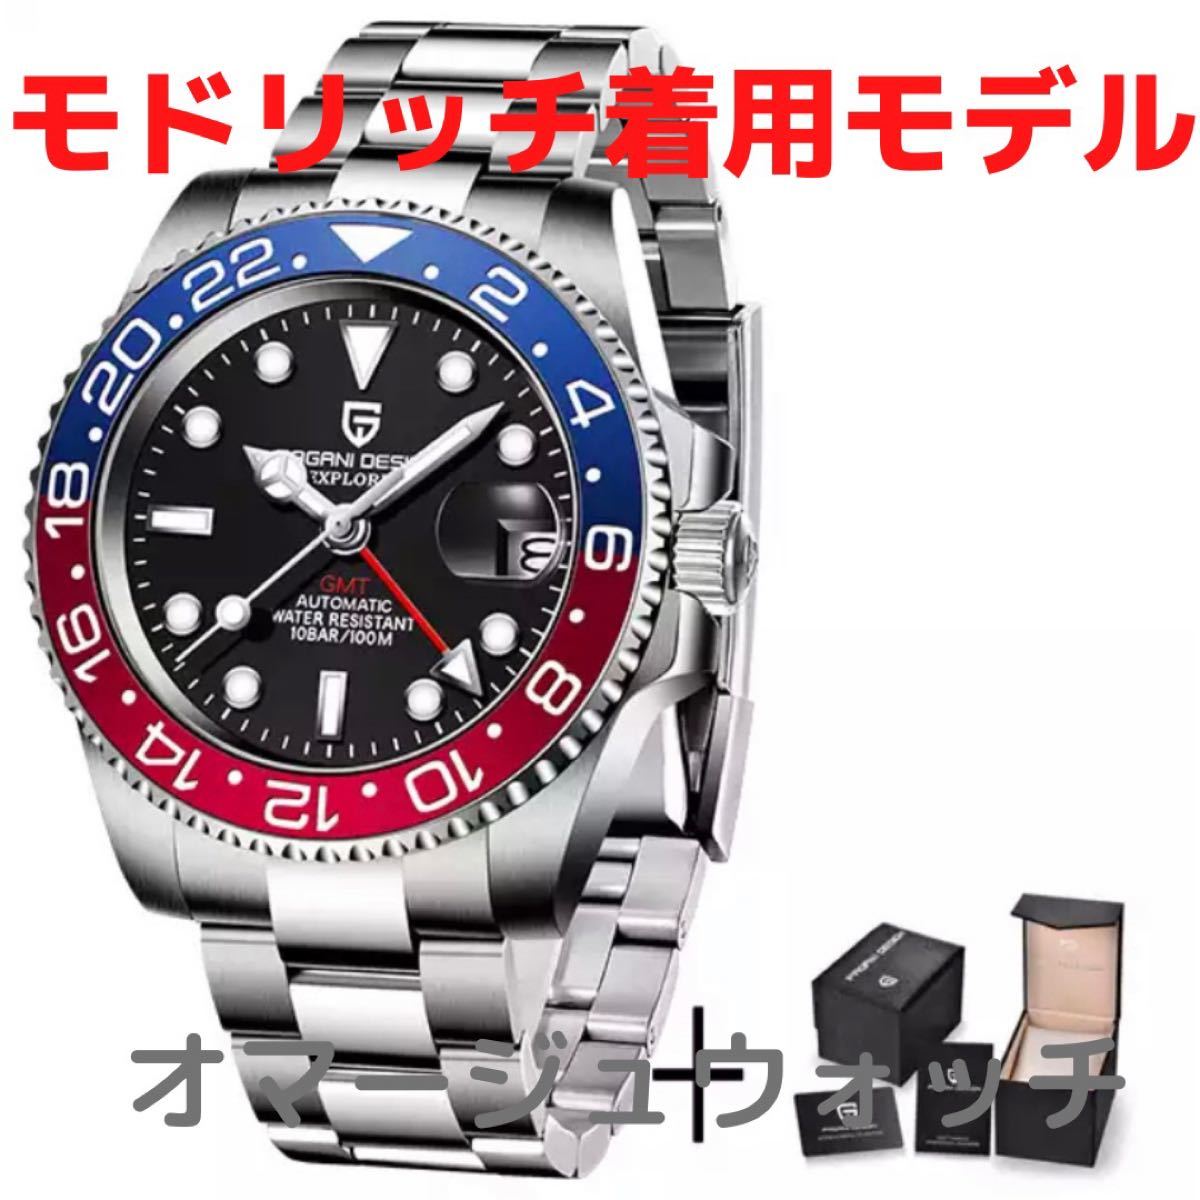 【日本未発売 アメリカ価格60,000円】機械式腕時計 オマージュウォッチ ロレックス GMTマスター スタイルペプシカラー